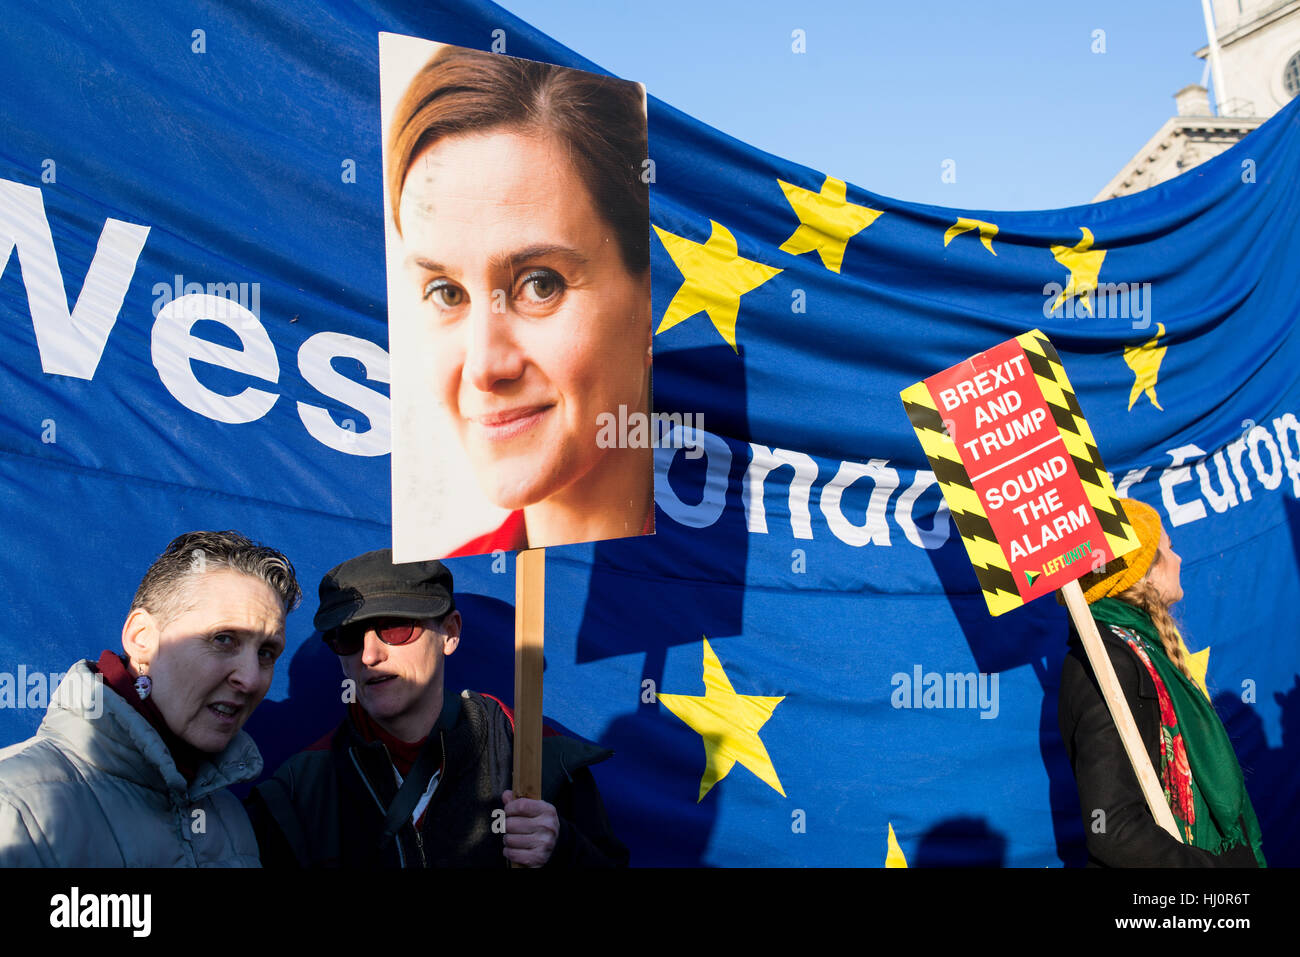 Londres, Royaume-Uni - 21 janvier 2017. Les protestataires holding Jo Cox poster et brexit sign in front of drapeau de l'UE.Des milliers de manifestants se sont rassemblés à Trafalgar Square pour assister à la Marche des femmes contre l'atout de Donald appelant pour les droits de l'homme et l'égalité. Banque D'Images